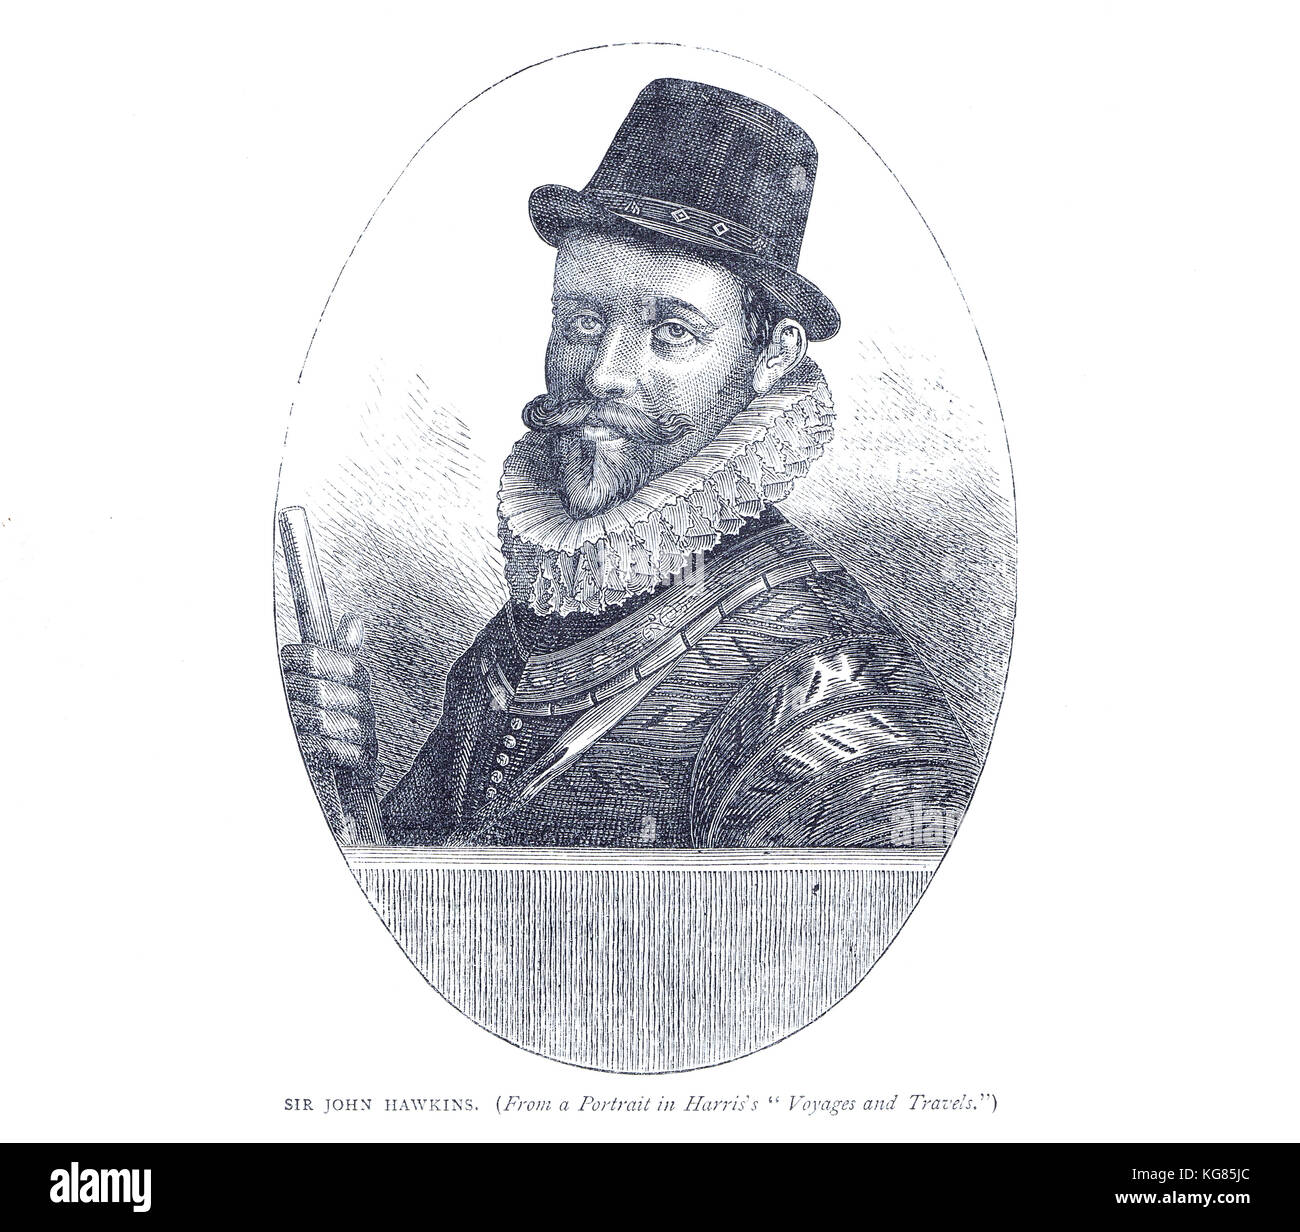 Ammiraglio Sir John Hawkins, 1532-1595, mercante di schiavi inglese, comandante e amministratore navale, mercante, navigatore, costruttore navale e corsaro. Foto Stock